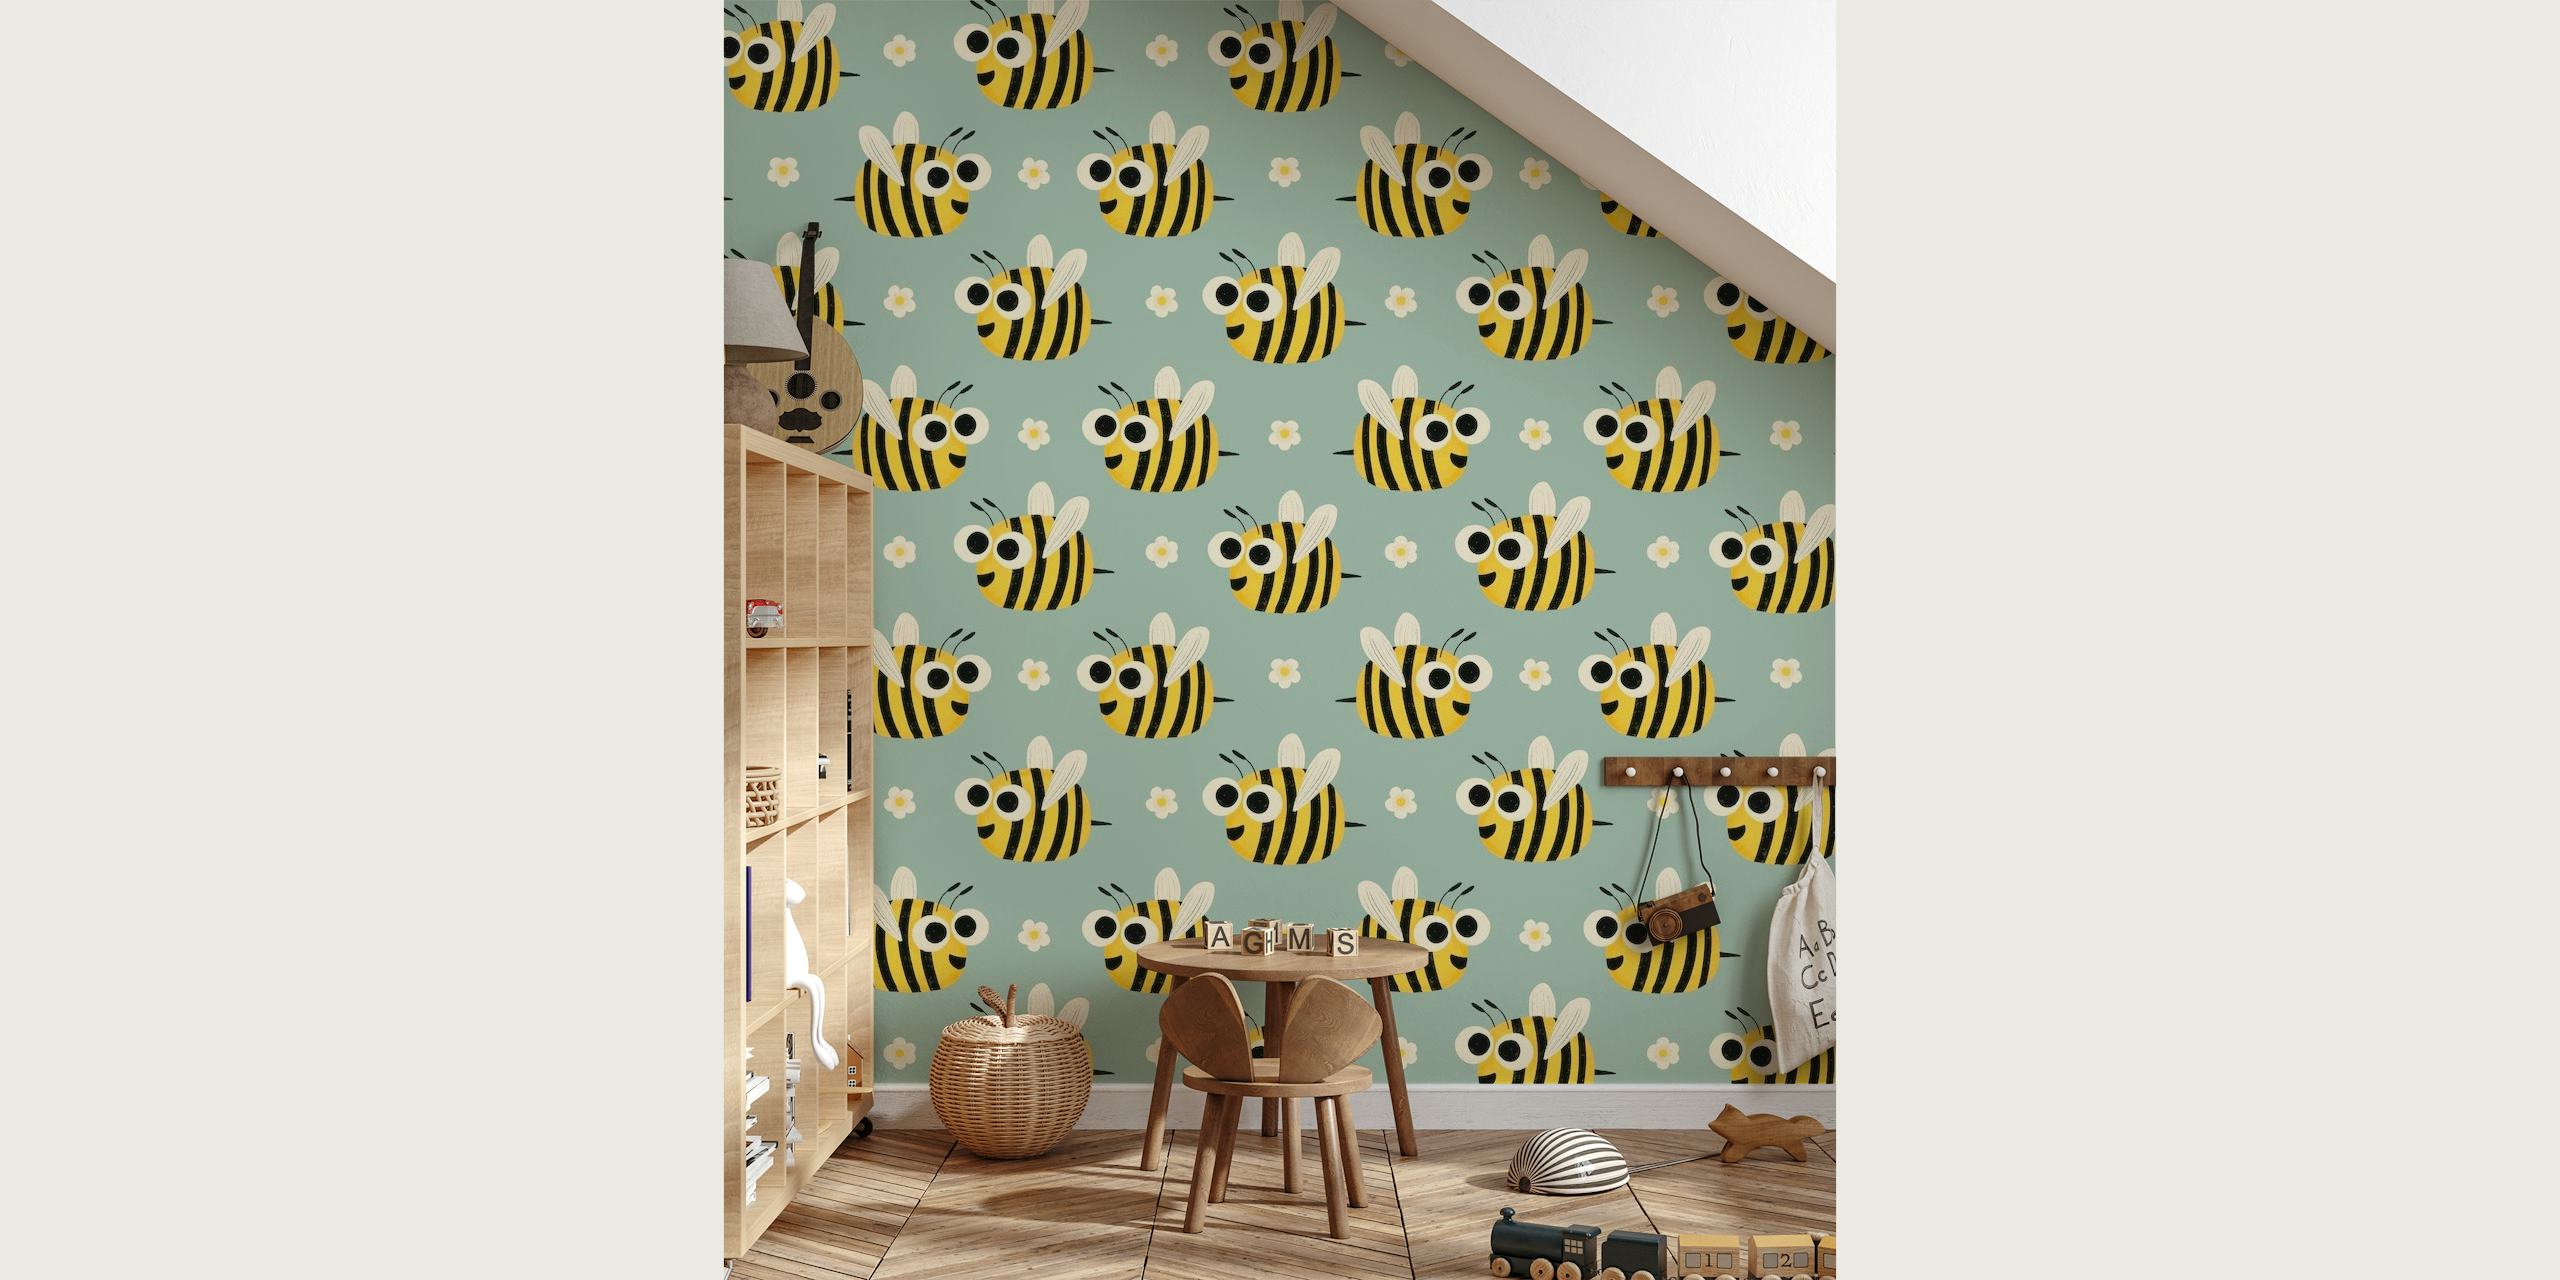 Ilustração de abelhas brincalhonas em fotomural vinílico de fundo azul